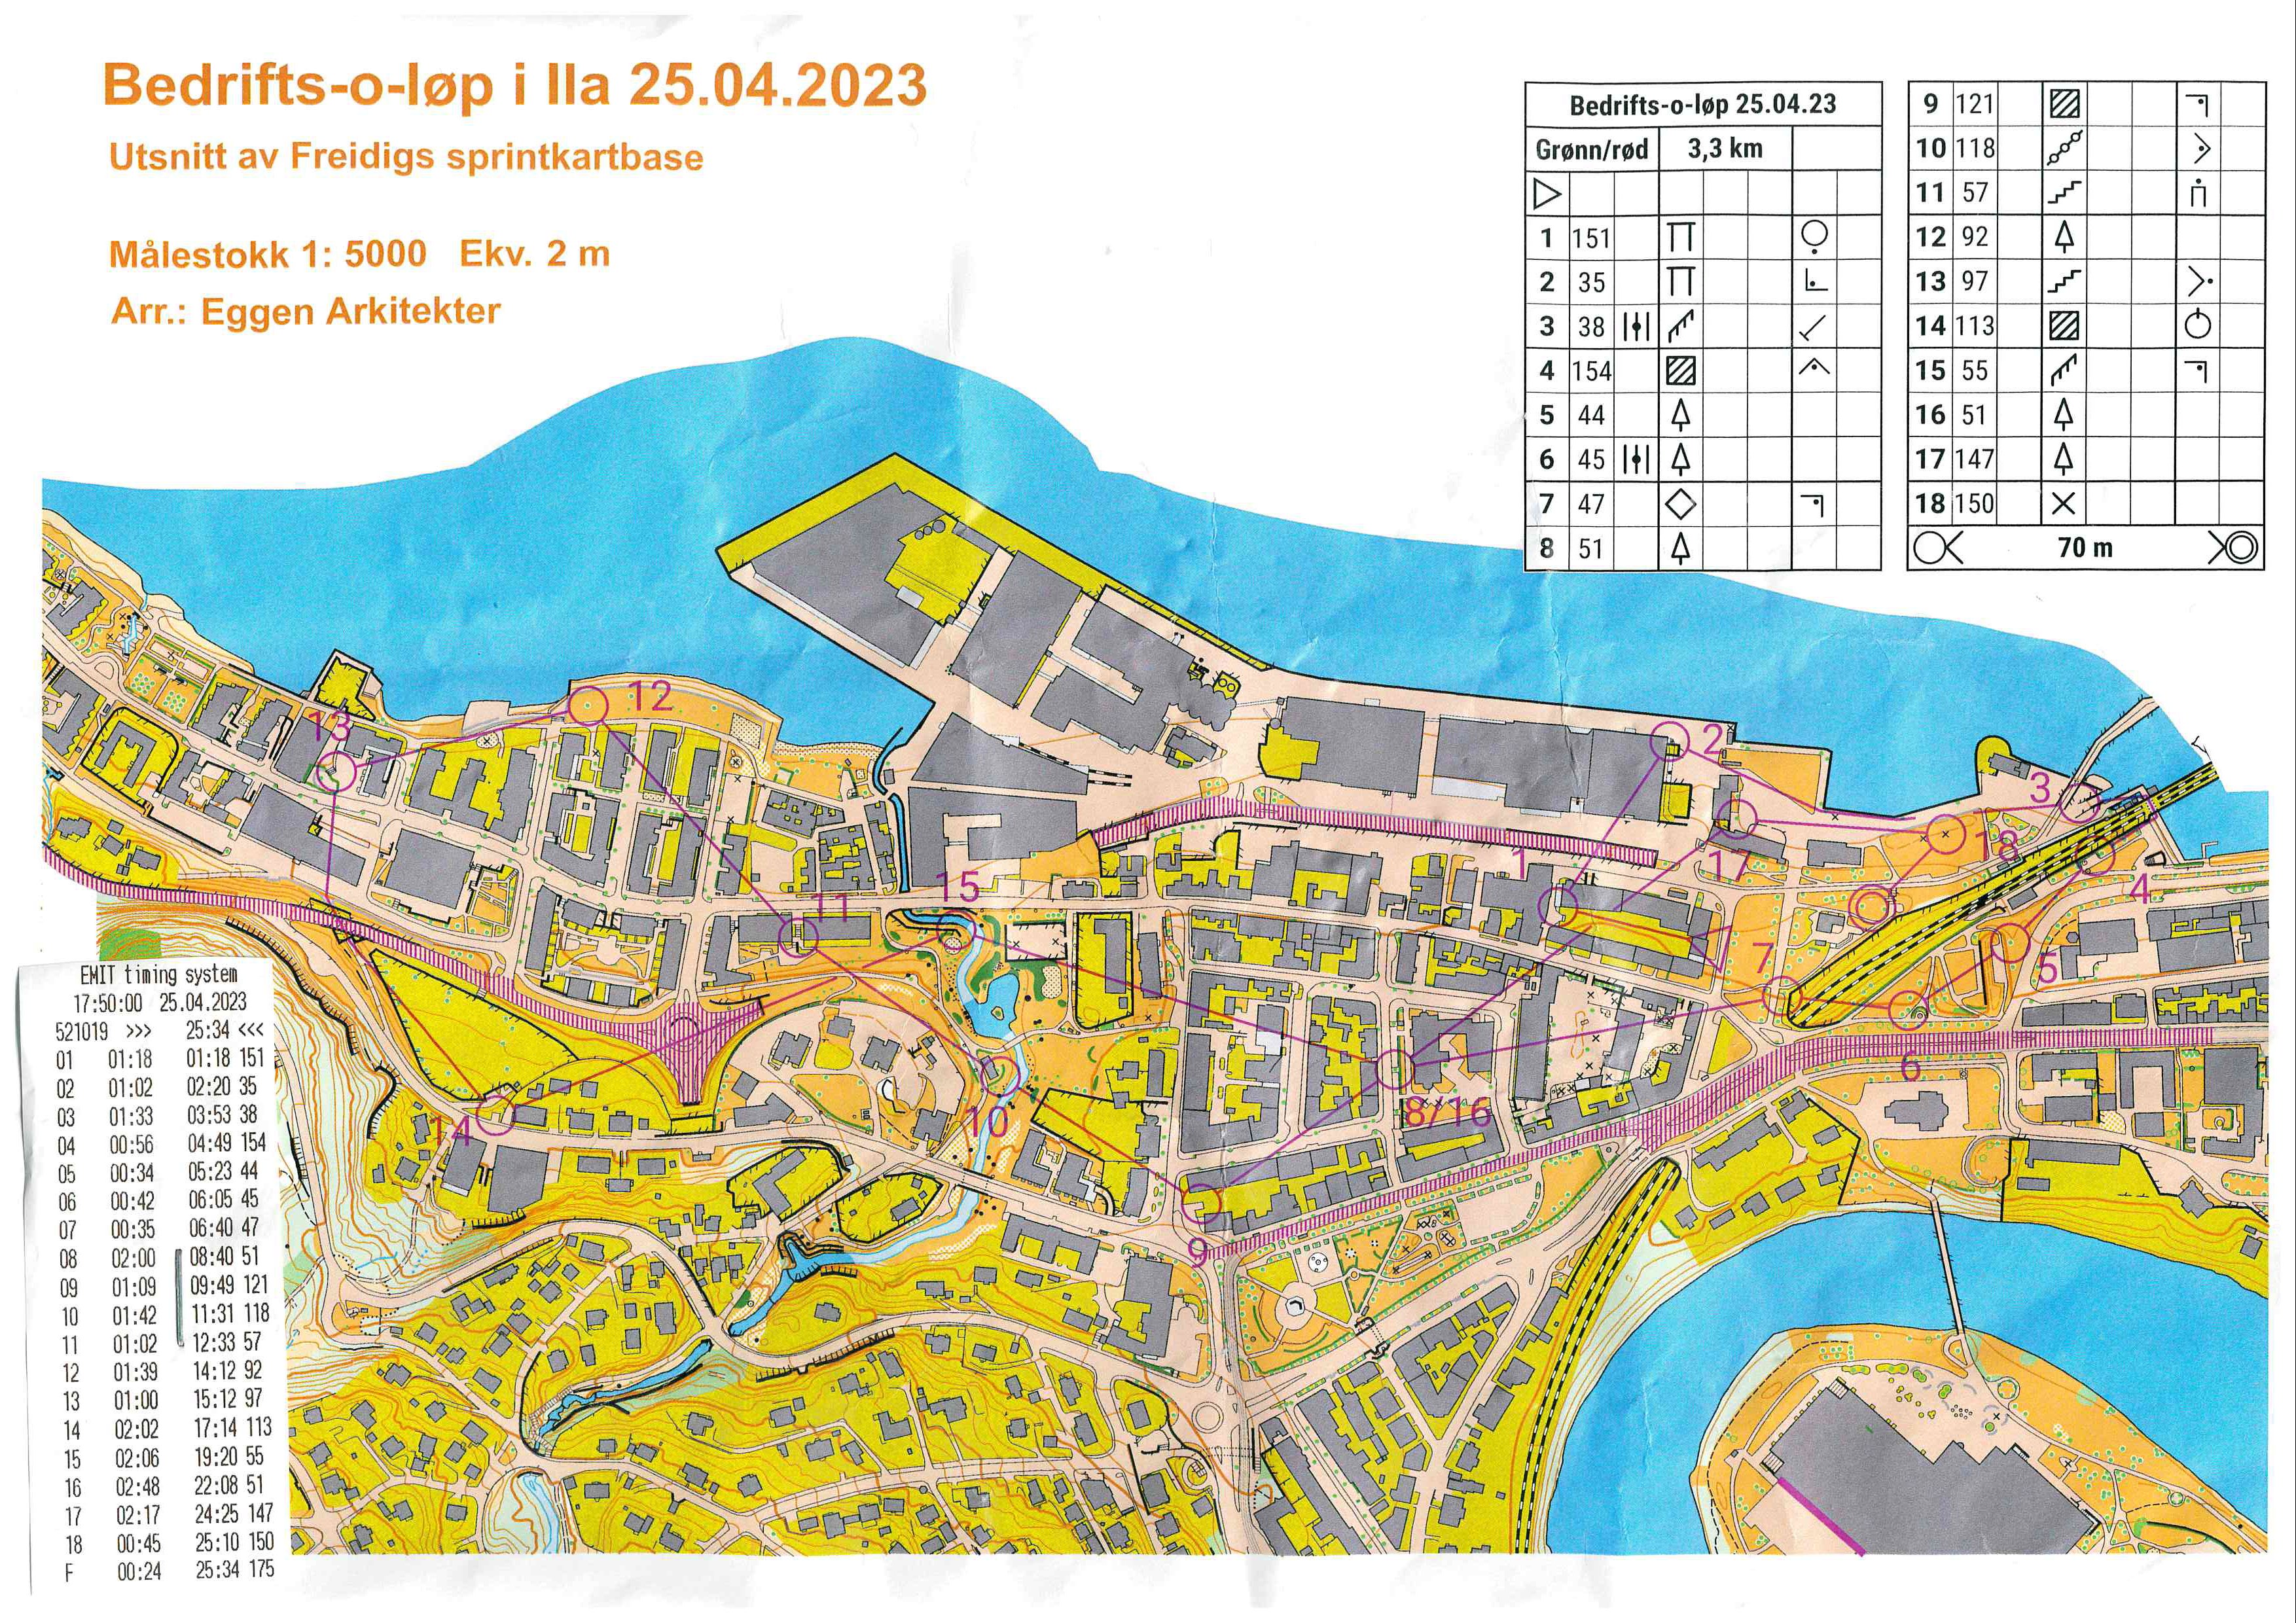 Bedrifts-o-løp, sprint, Skansen (25.04.2023)